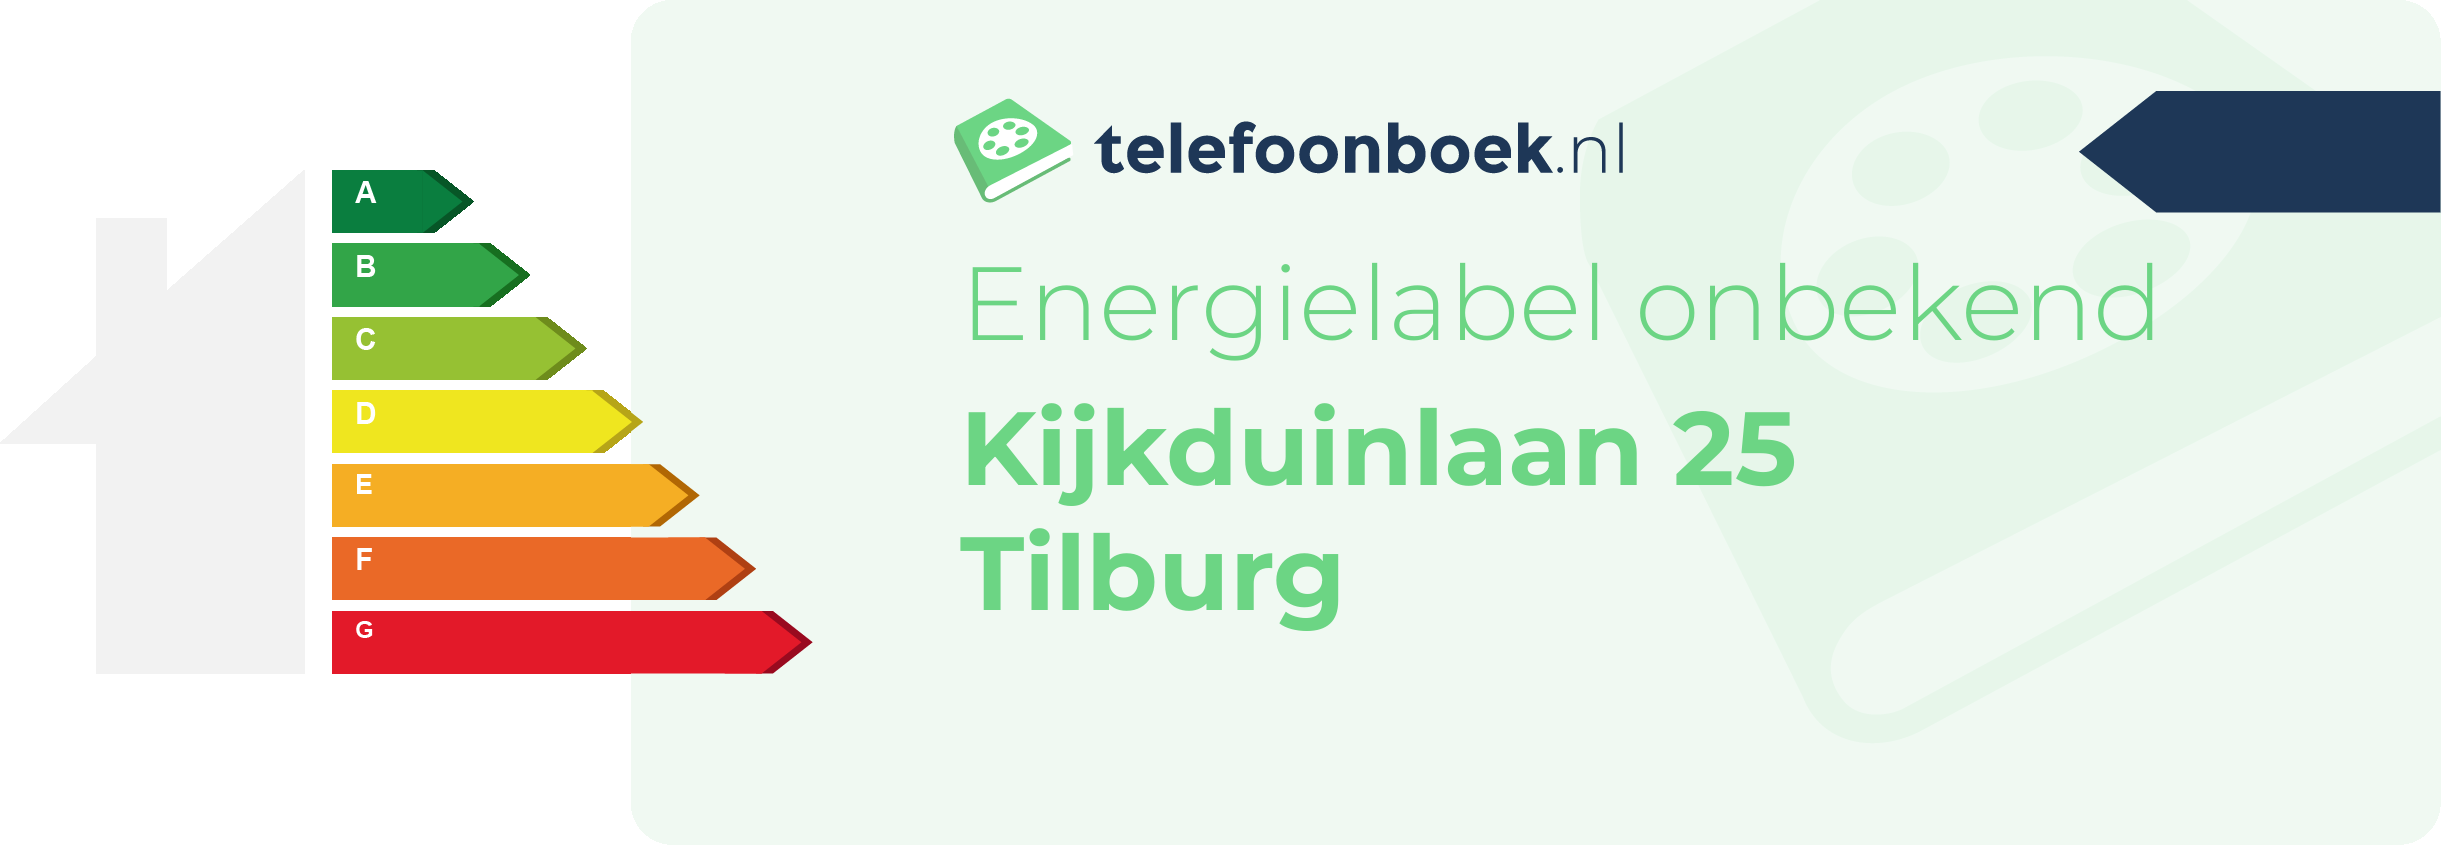 Energielabel Kijkduinlaan 25 Tilburg